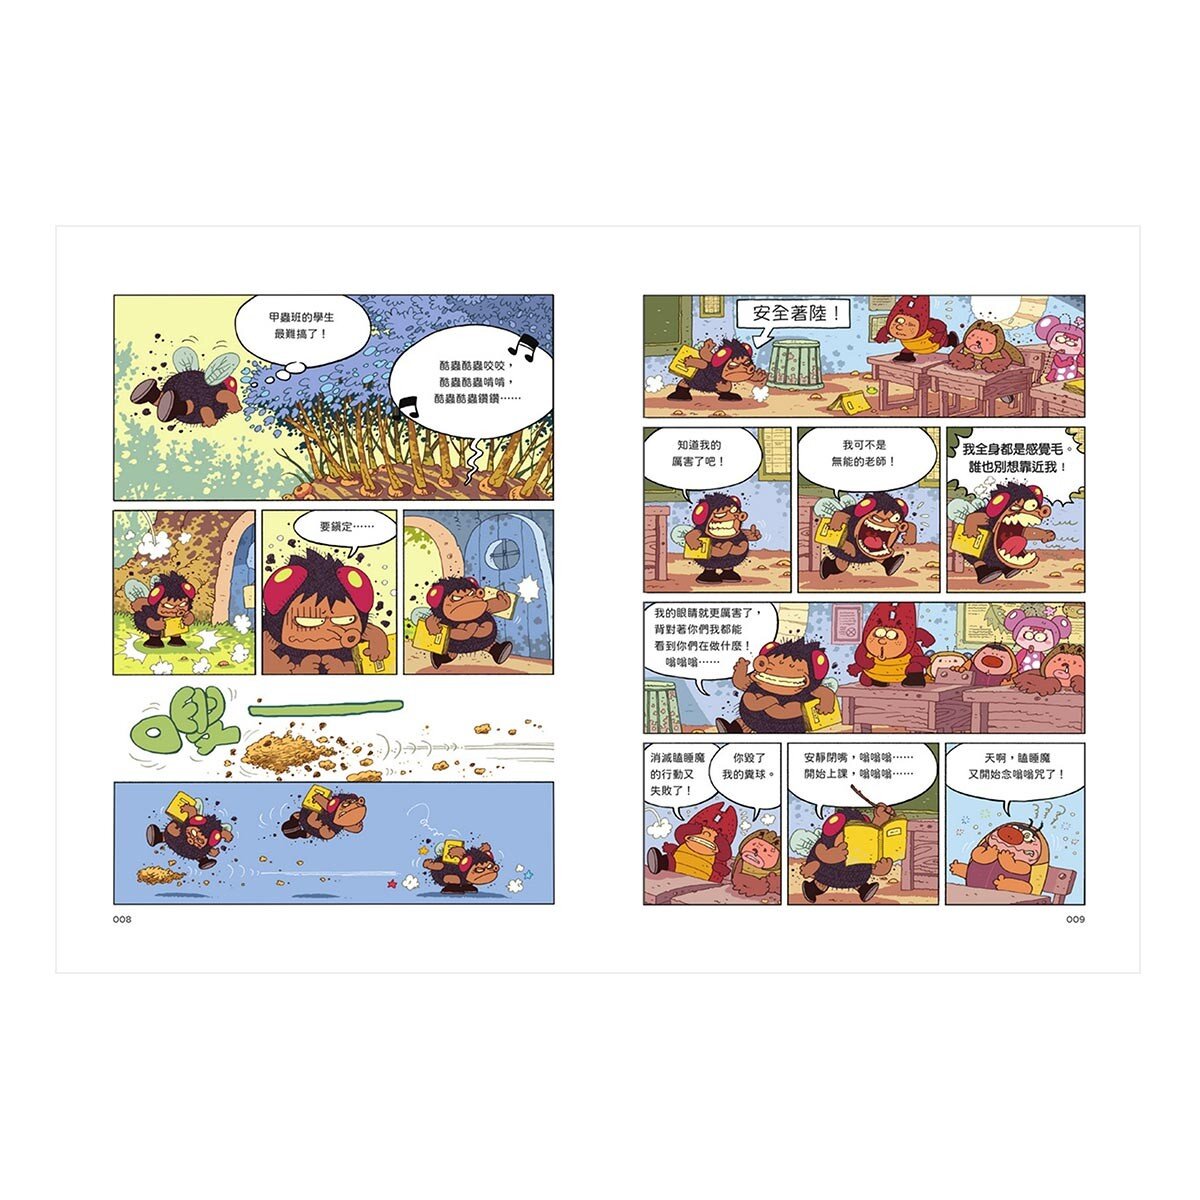 漫畫昆蟲記 - 酷蟲學校甲蟲這一班：爆笑全集 附贈酷蟲很有戲書籤 (共5冊)